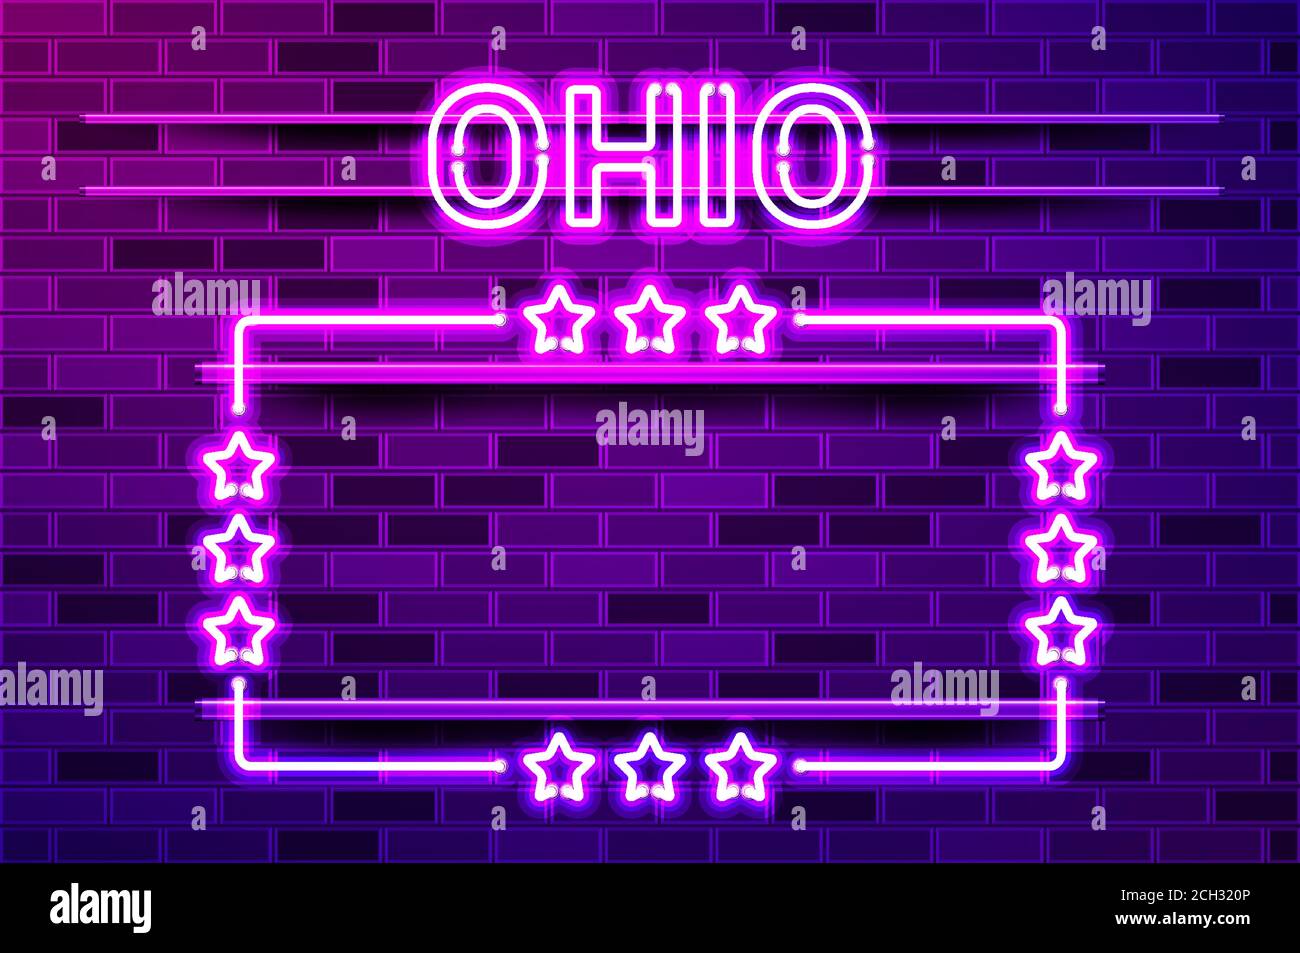 Ohio US State lettrage au néon violet brillant et un cadre rectangulaire avec des étoiles. Illustration vectorielle réaliste. Mur de briques violets, violet phosphorescent, métal h Illustration de Vecteur